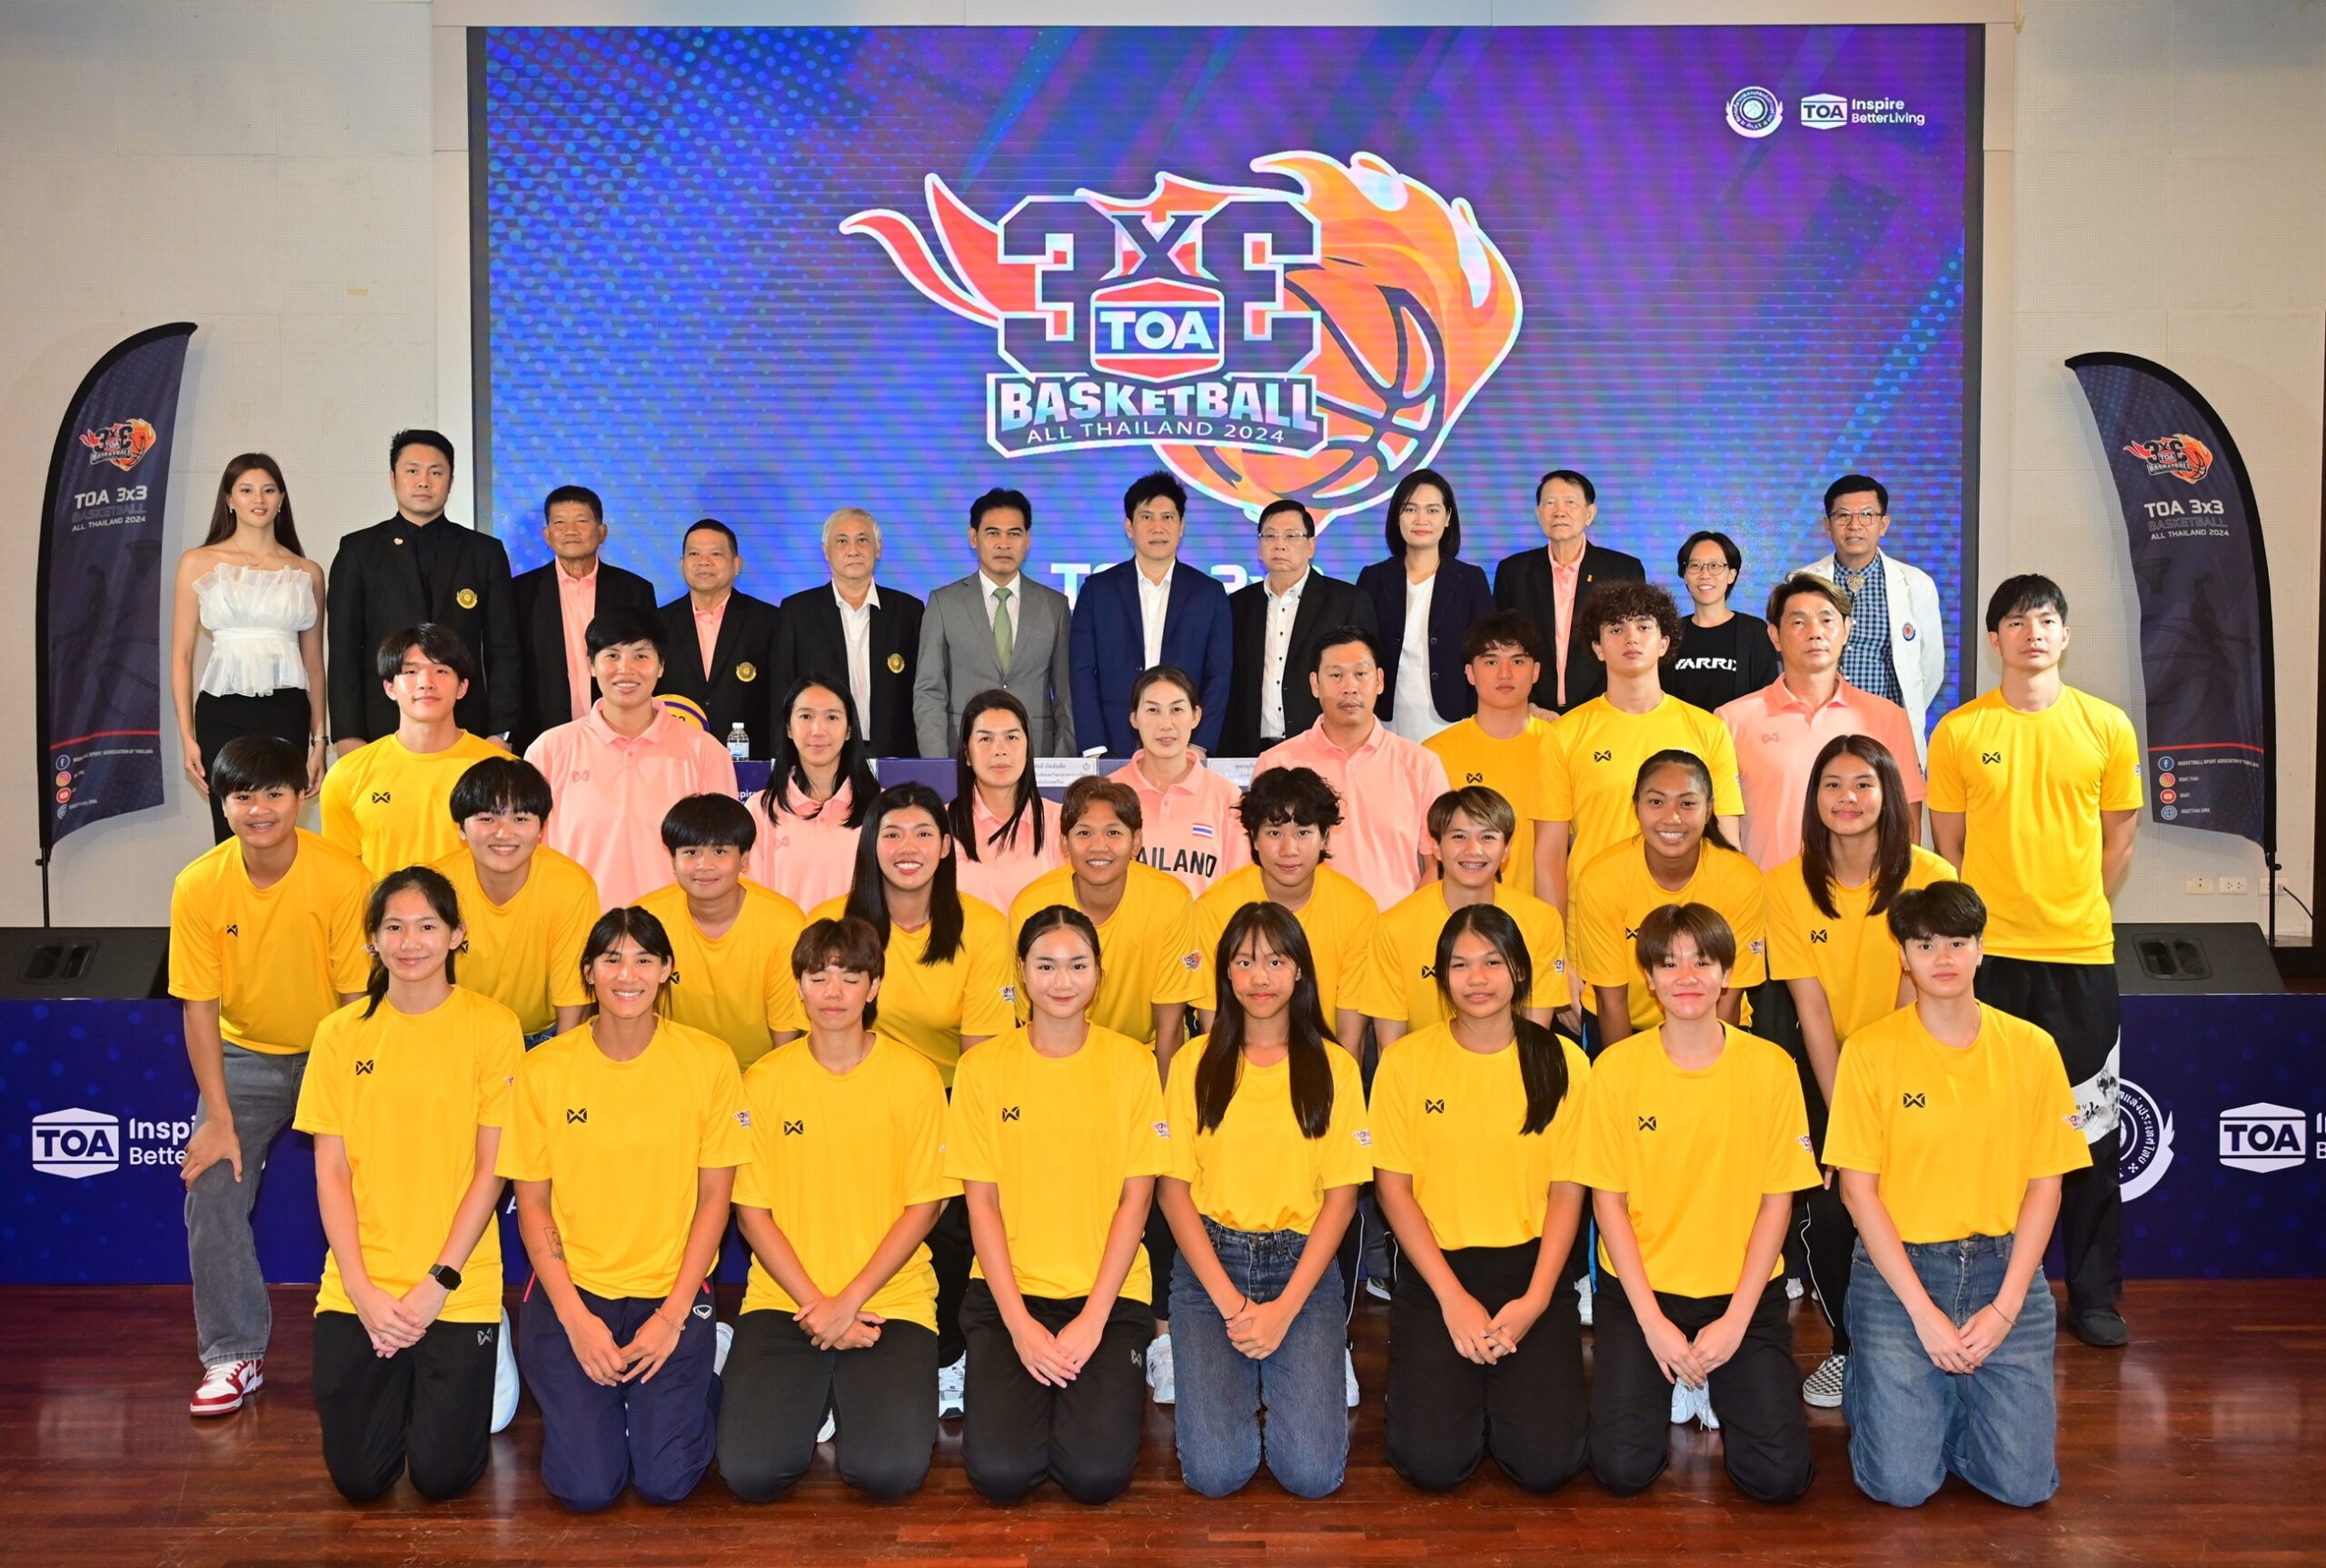 TOA x フープ協会は、タイ全土で熱狂的な 3×3 バスケットボールの戦いを主催し、このスポーツのソフトパワー化を推進しています。  2年連続で、4月26日の第1競技場から始まる世界クラスの試合を日本で観戦するチケットを獲得する準備が整いました。